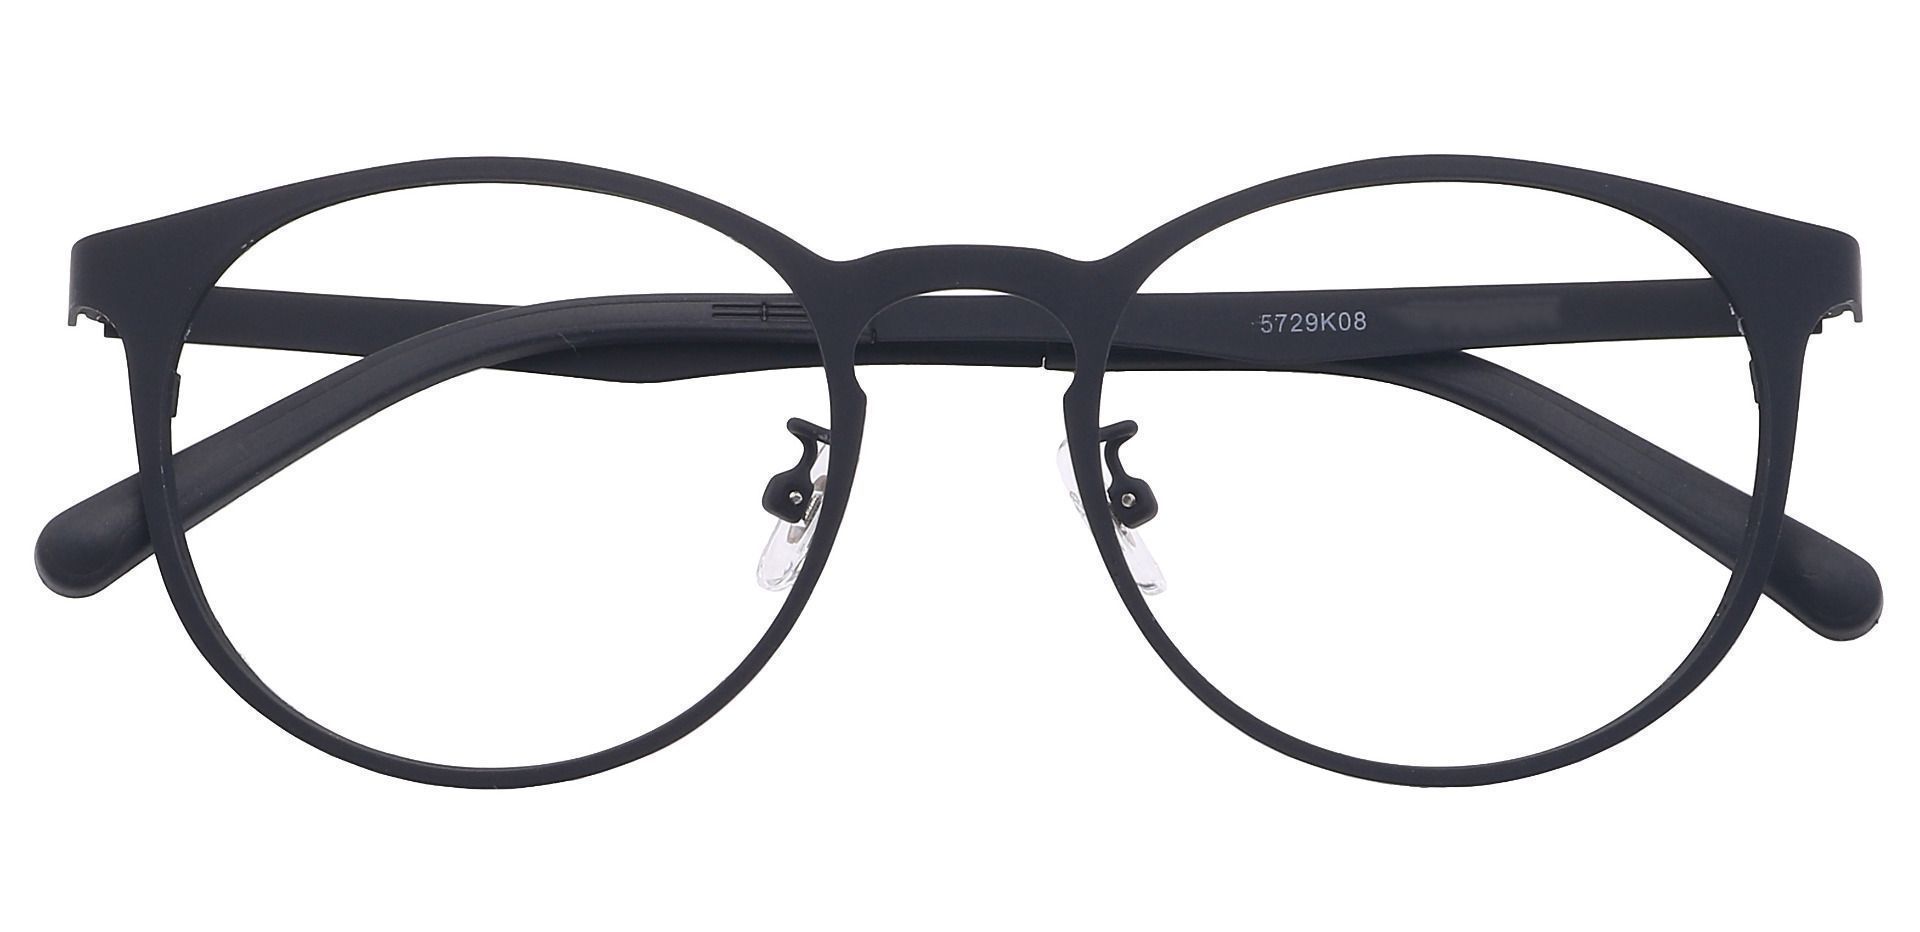 Wallace Oval Non-Rx Glasses - Black